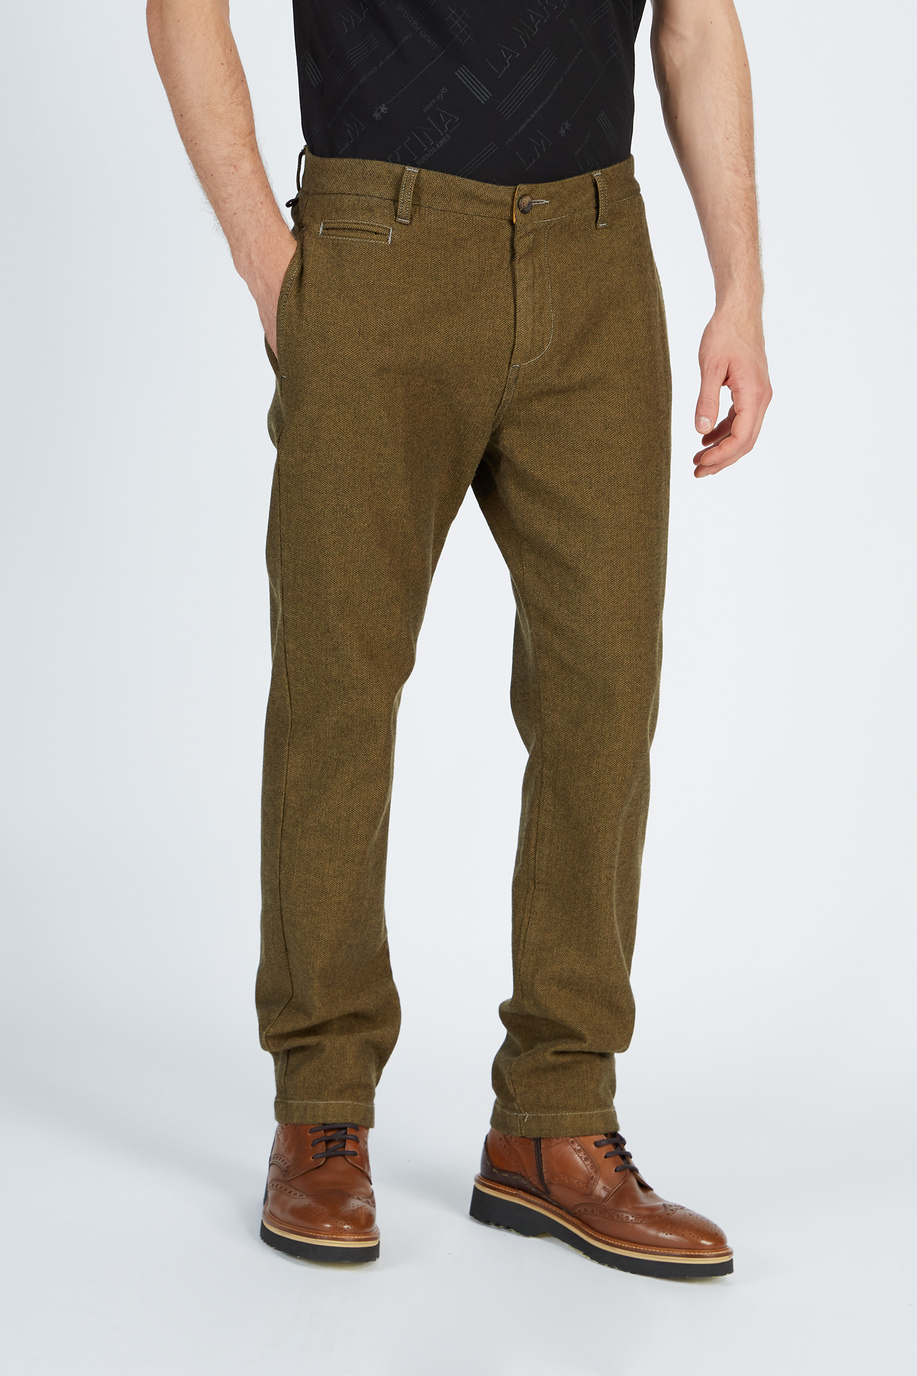 Pantalone da uomo modello 5 tasche in cotone regular fit - Argentina | La Martina - Official Online Shop